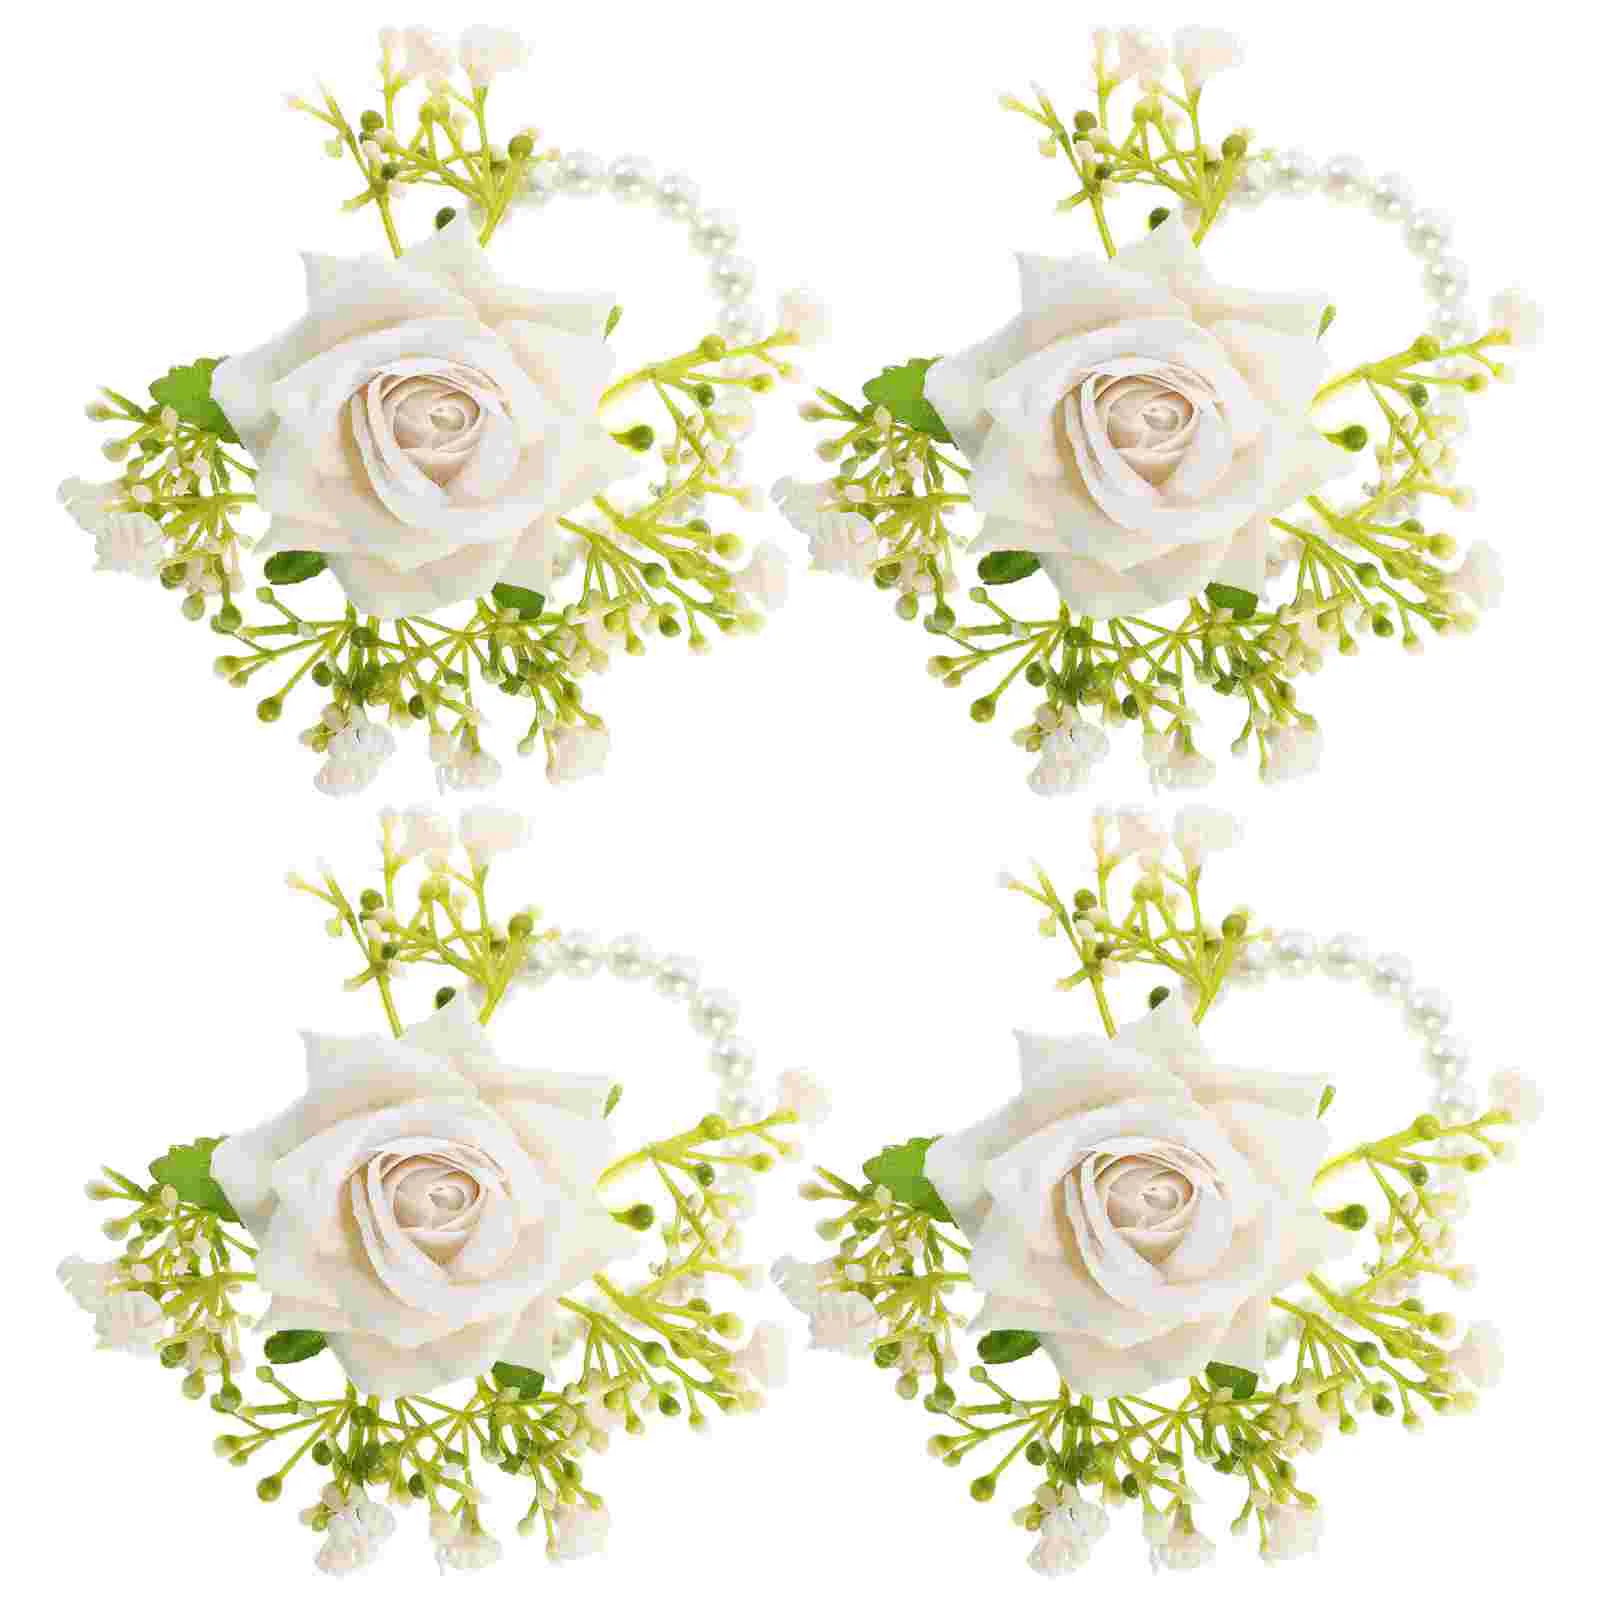 

4 Pcs Bride Wrist Corsage Bridesmaid Flower Bracelet Strap Wristlet Corsages Wedding Party